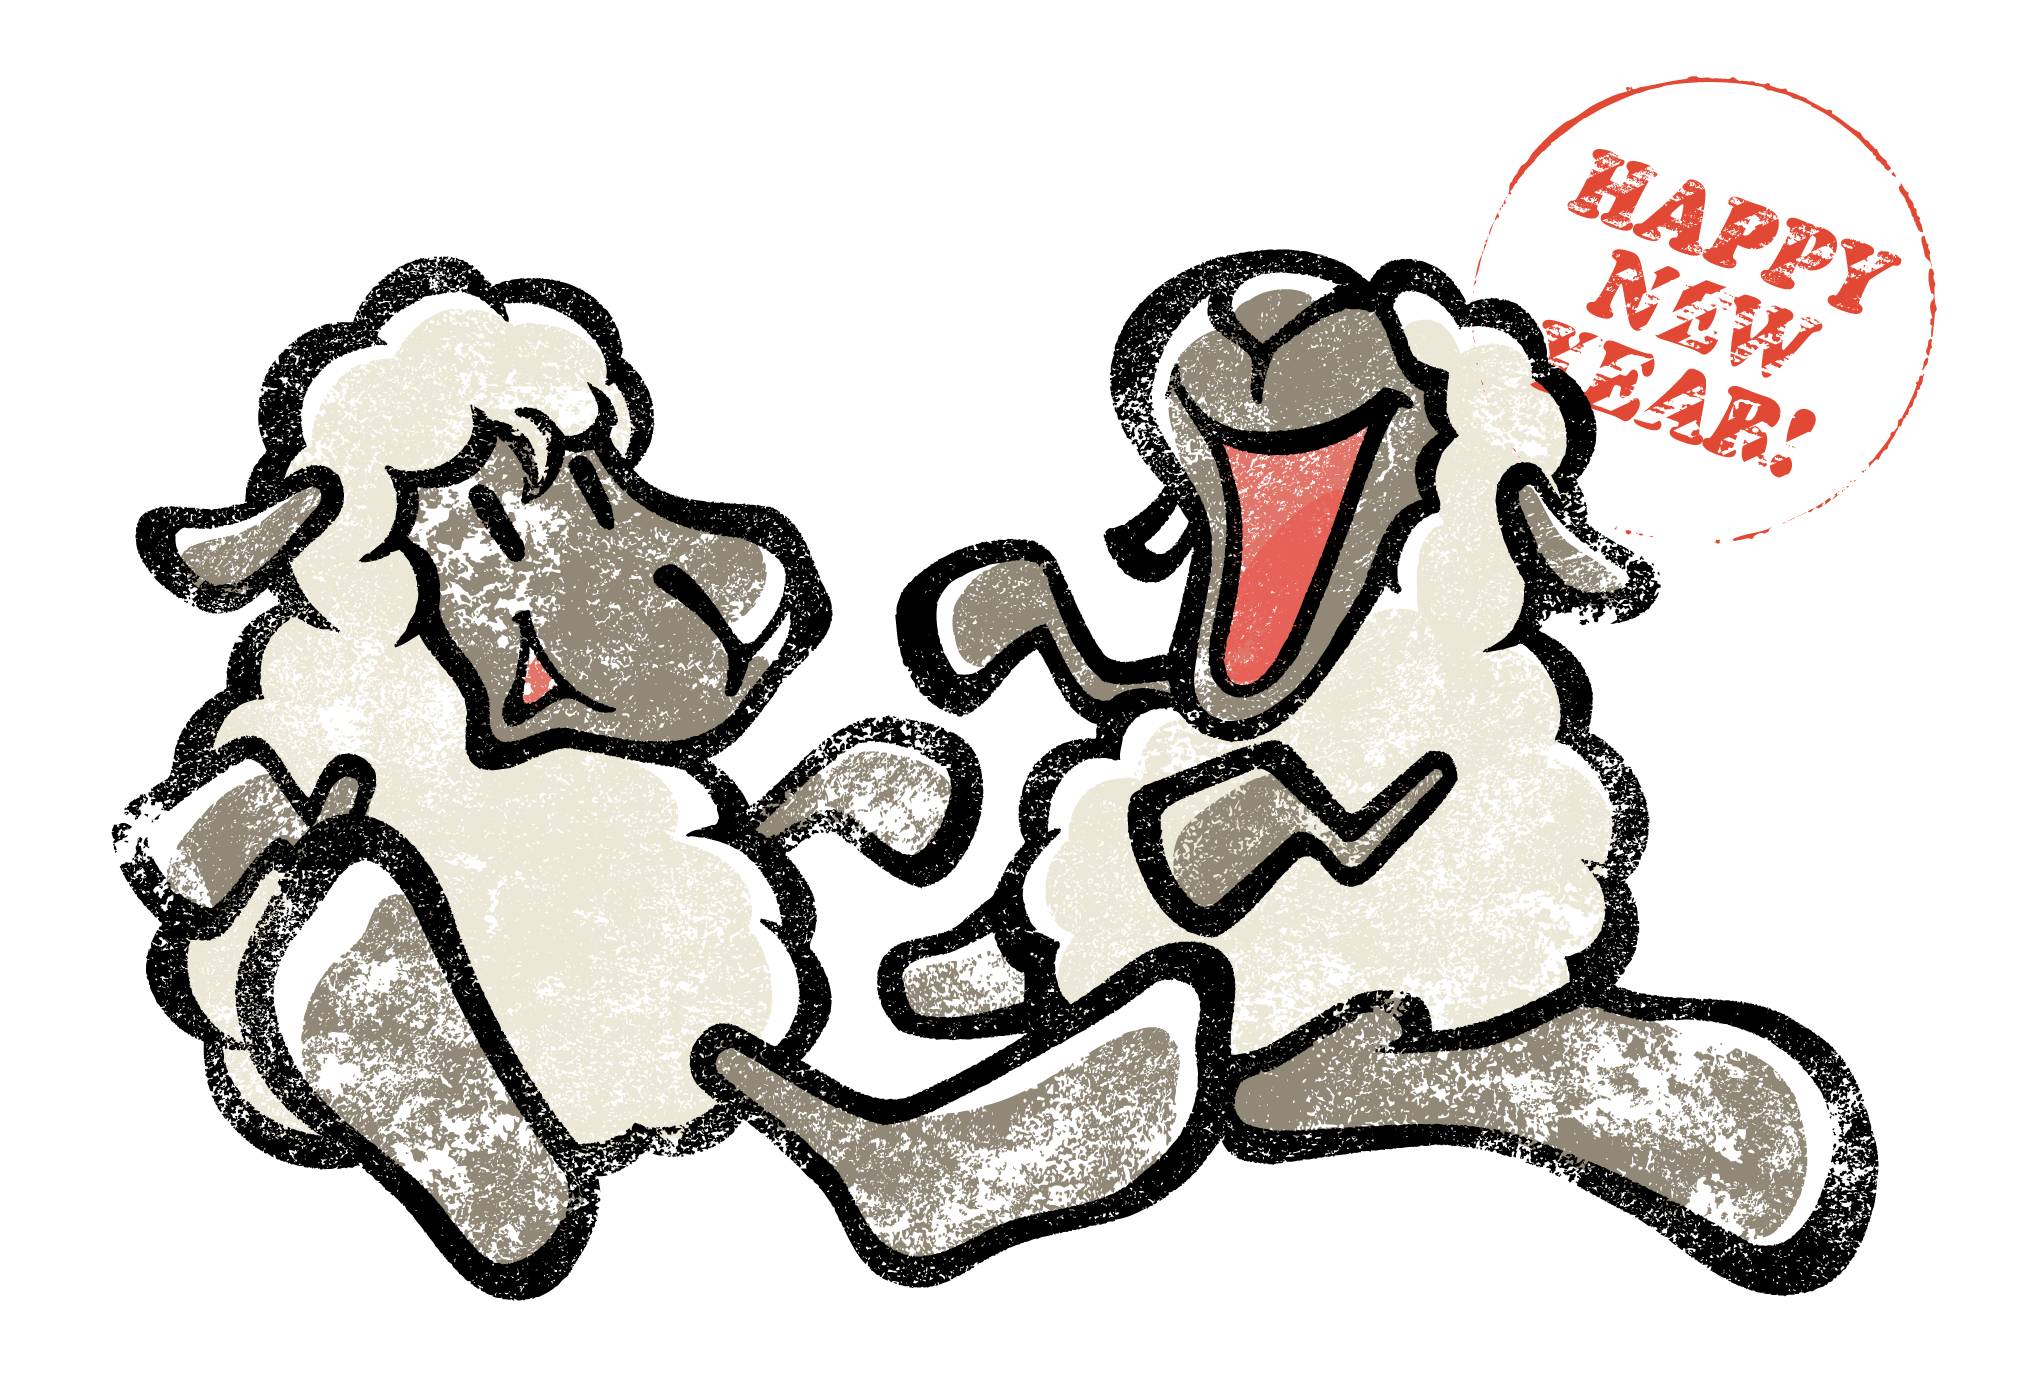 2015年賀状08-1：Laughing sheep / modifyのダウンロード画像